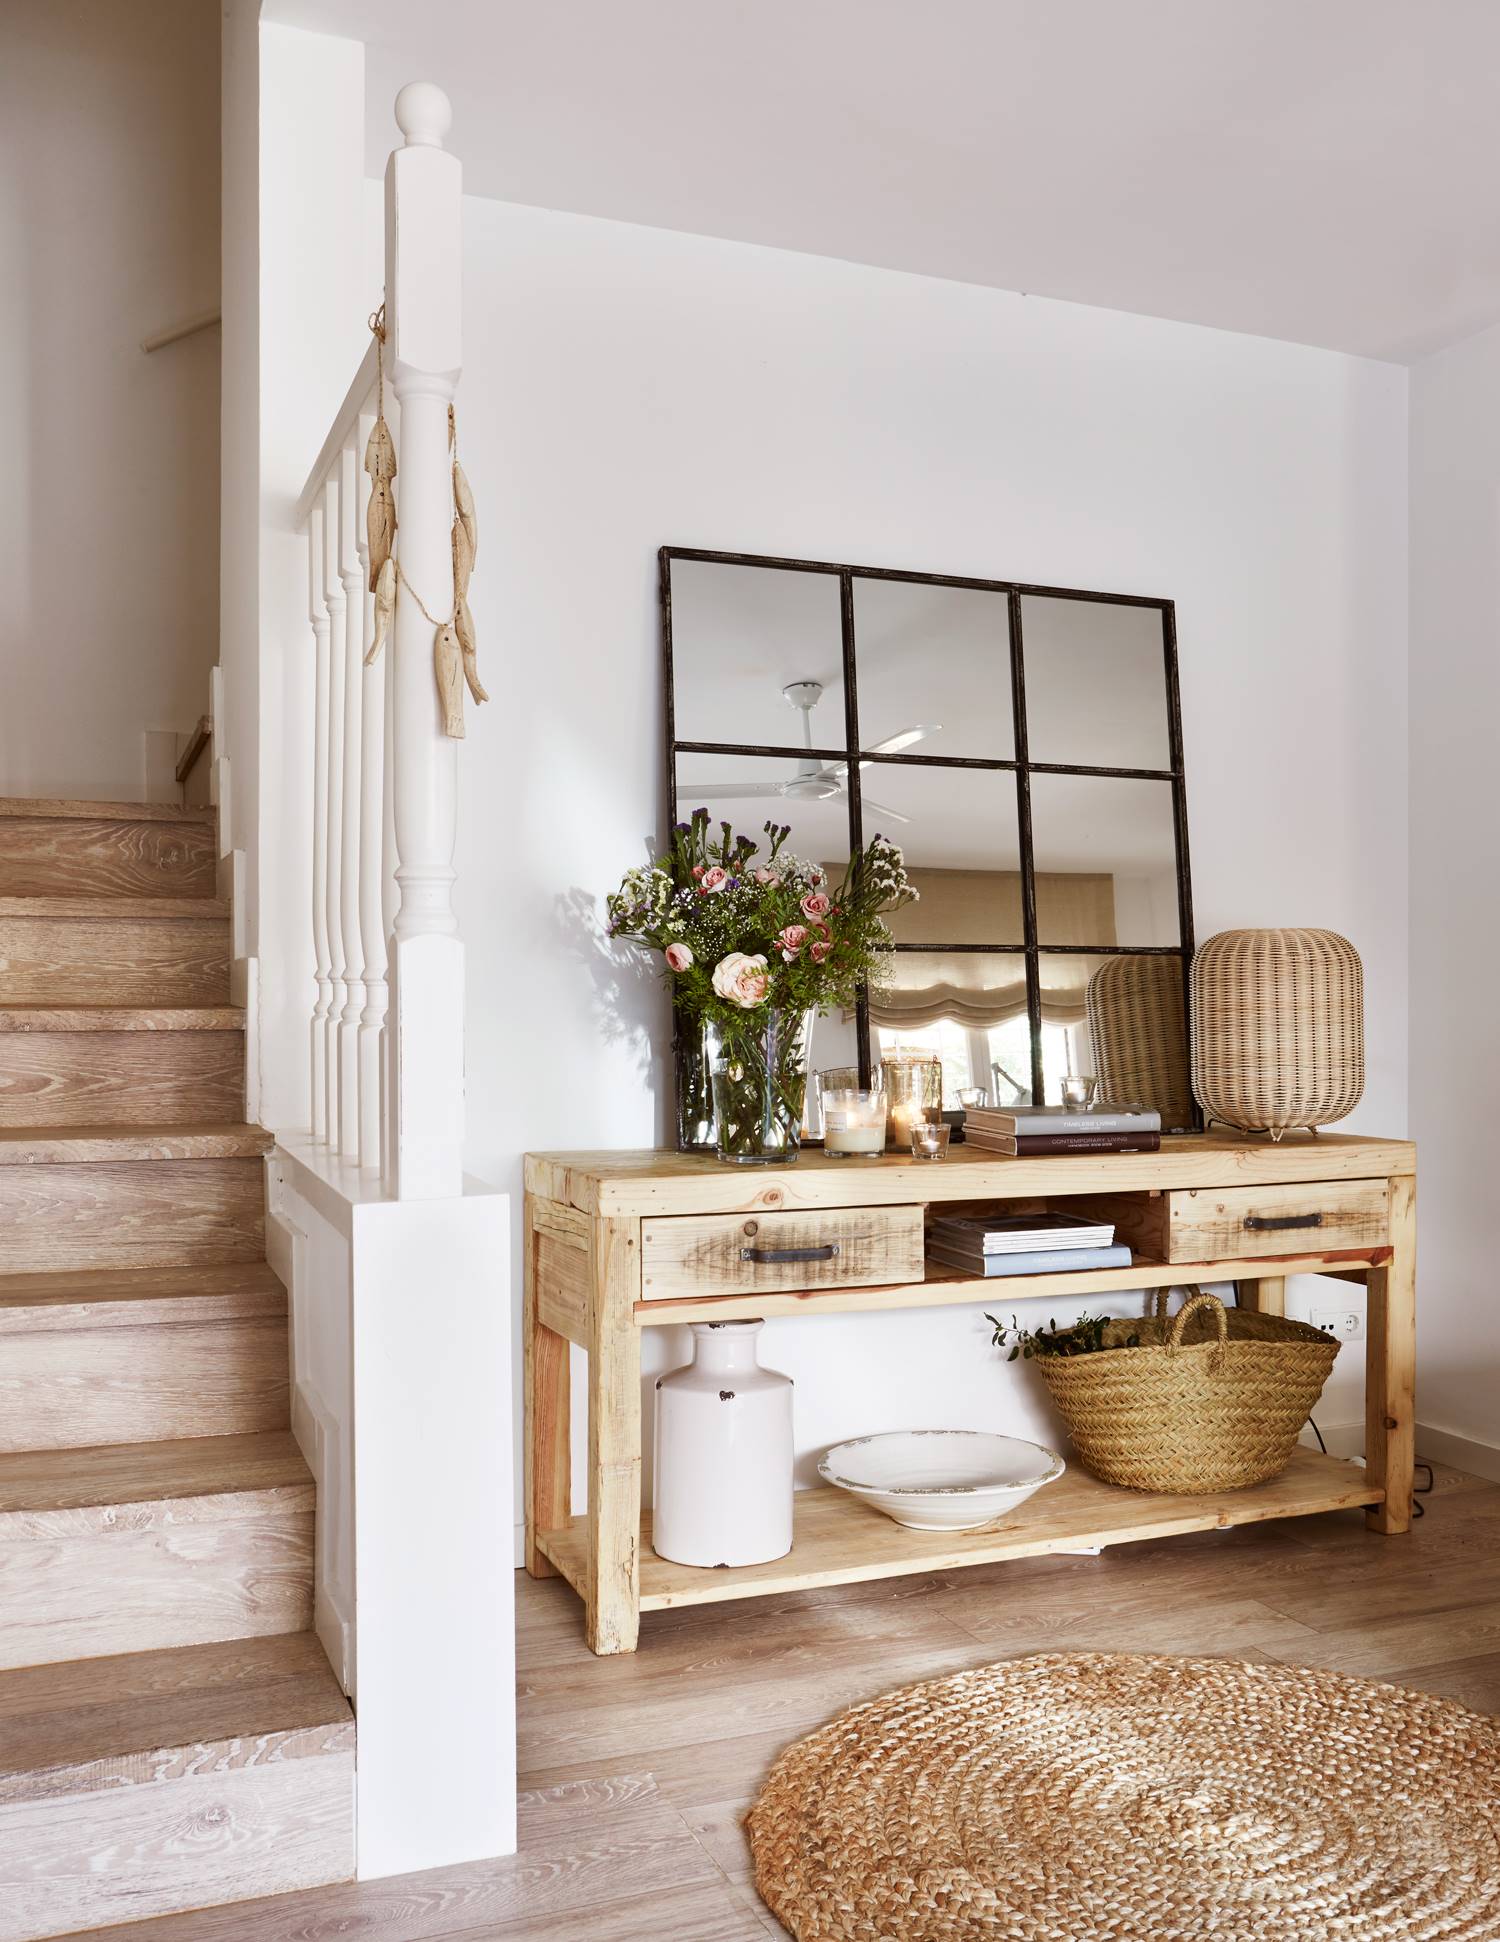 Un recibidor rústico con paredes blancas, mueble de madera y espejo de cuarterones.